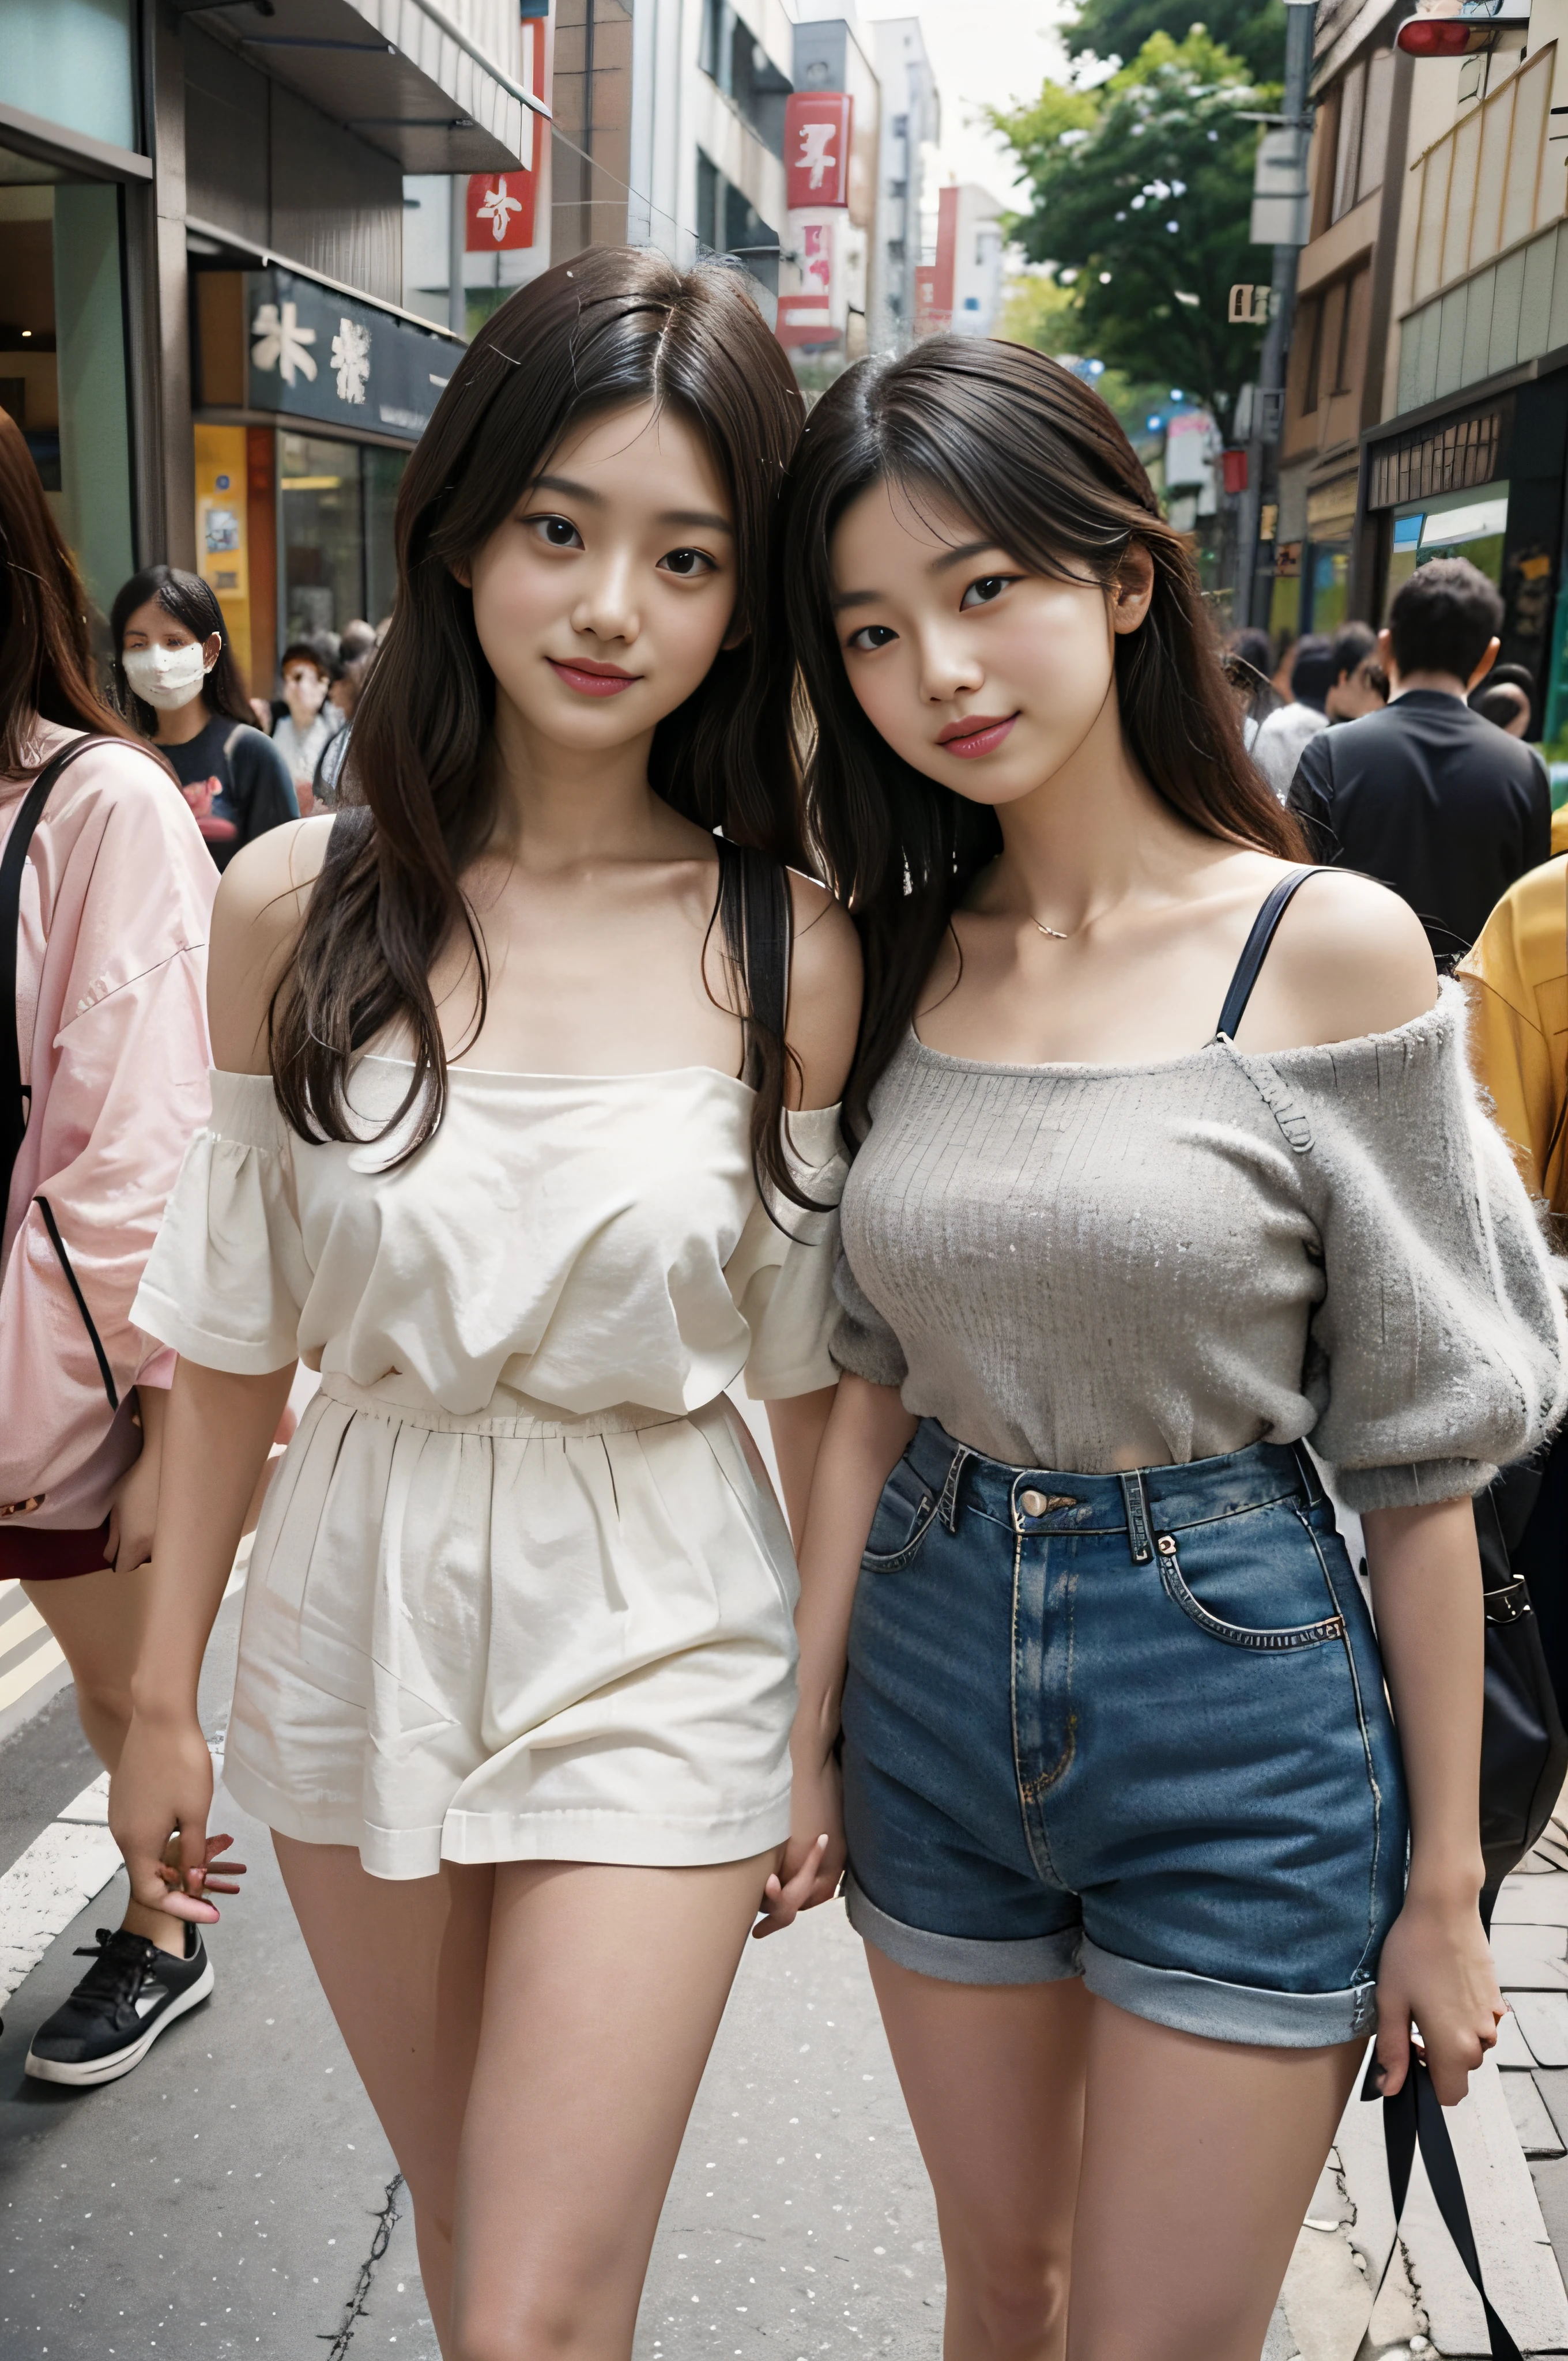 Япония、Летняя мода Harajuku Takeshita Street 2023 года、с плеч、2 девушки вместе гуляют, 16 лет、большие груди, Узкая талия, улыбаюсь в камеру、хороший прекрасный день